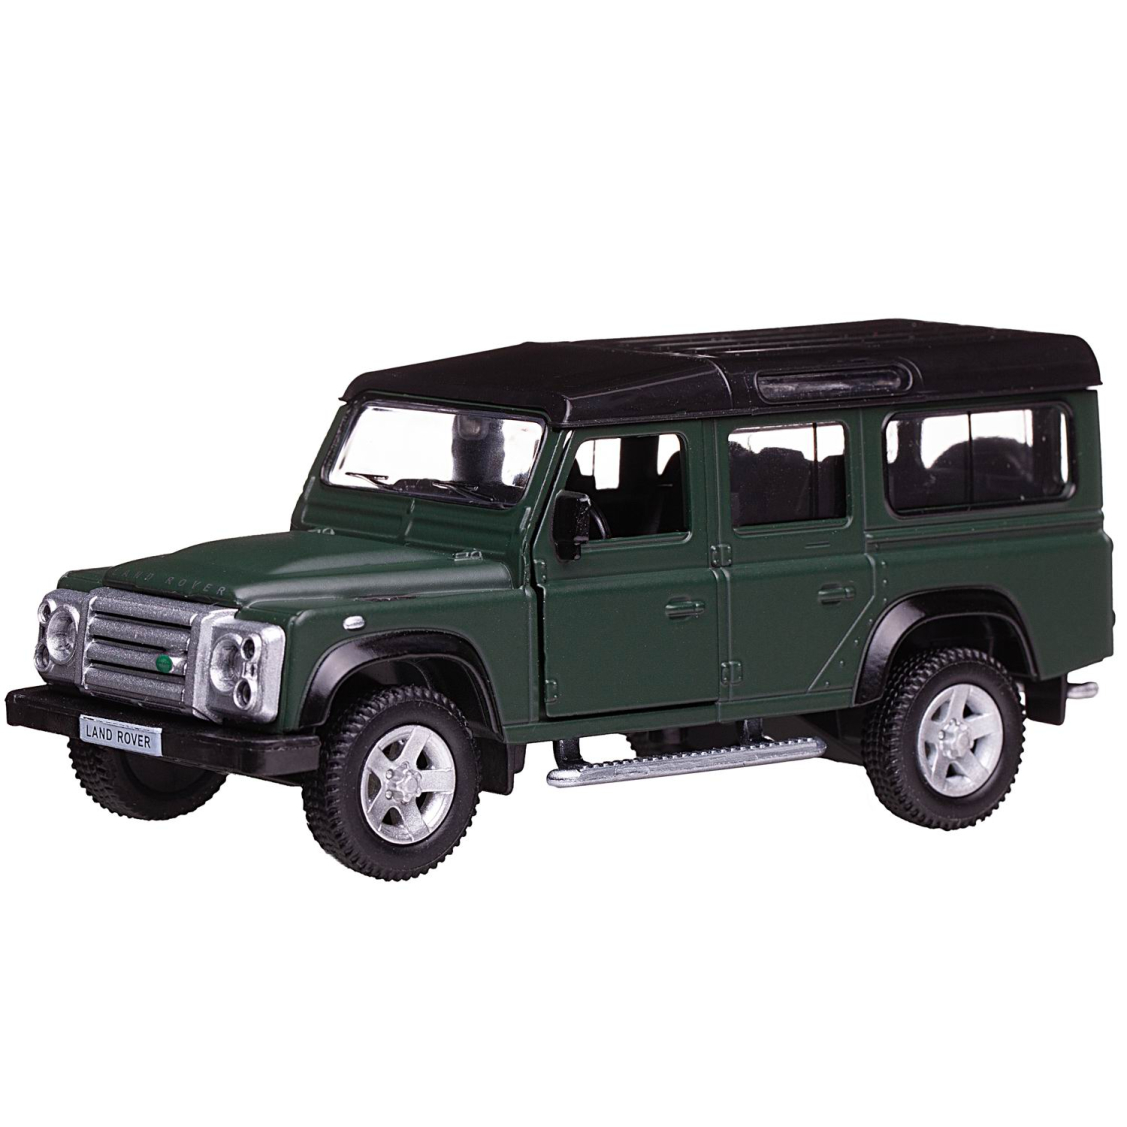 Машинка металлическая Uni-Fortune RMZ City 1:35 Land Rover Defender, инерционная, темно-зеленый матовый цвет, 16.5 x 7.5 x 7 см